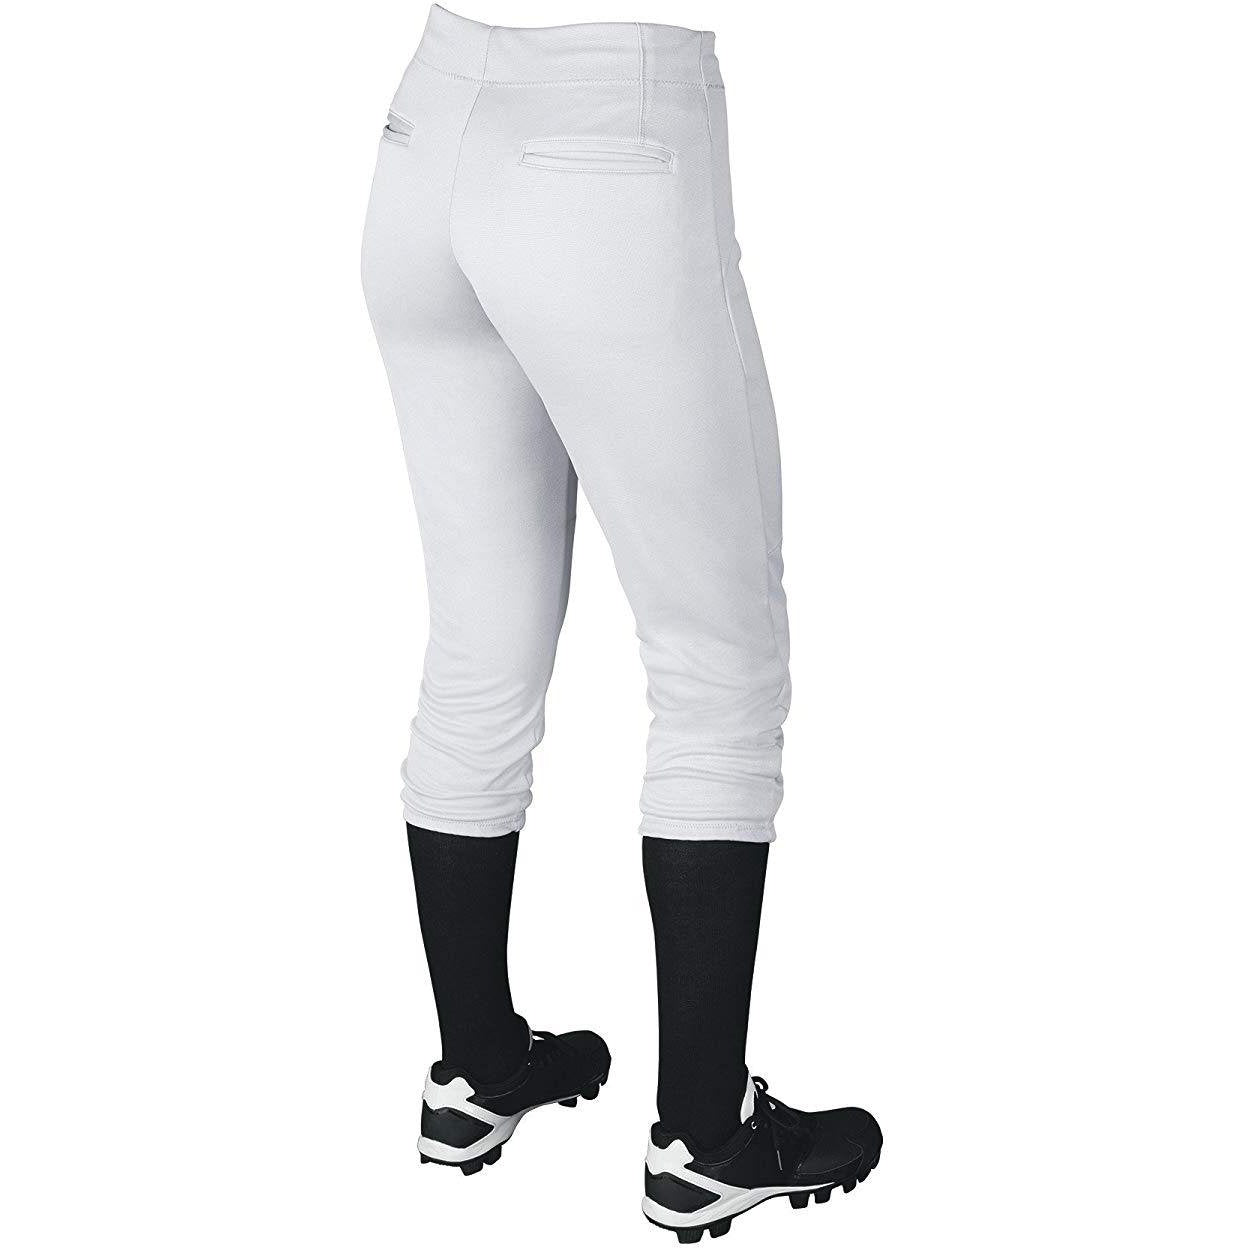 NEW Rawlings baseball-softball pants youth (XS) gray grey x-small | eBay